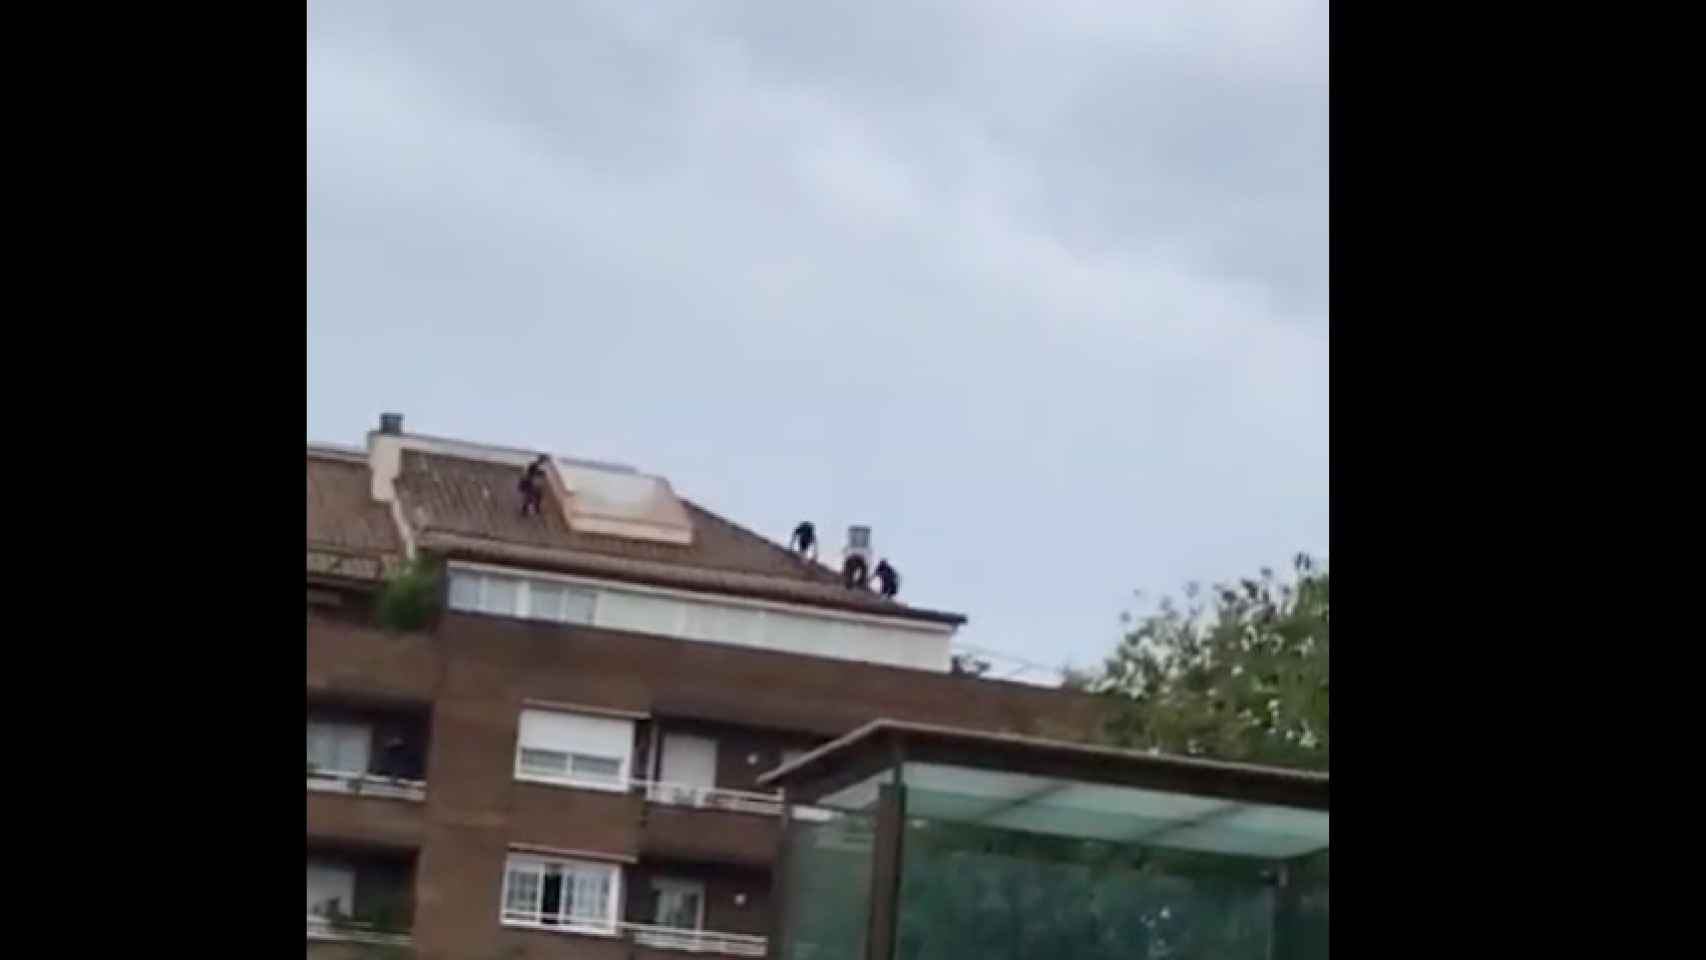 Los cuatro presuntos criminales subidos en un tejado de Barcelona